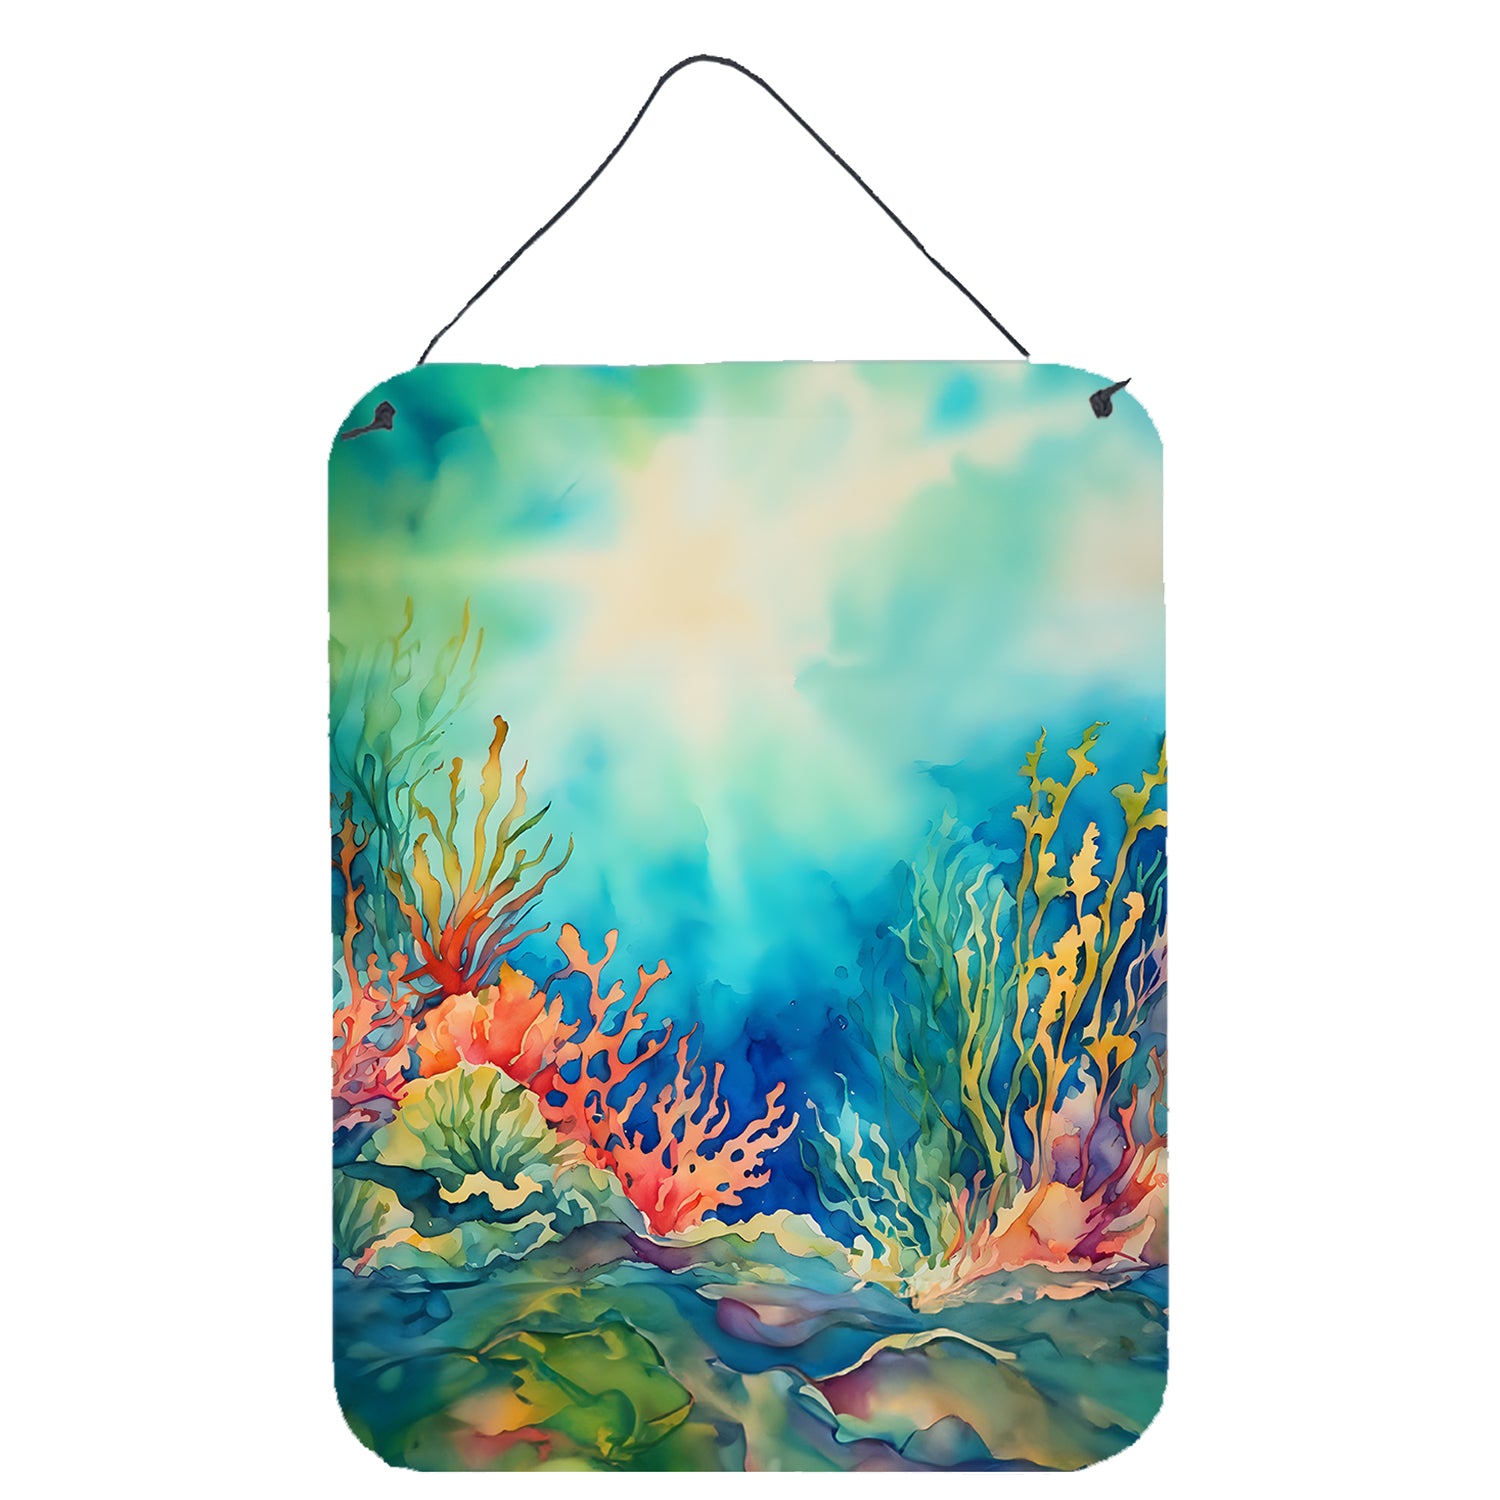 Buy this Seaweed Wall or Door Hanging Prints